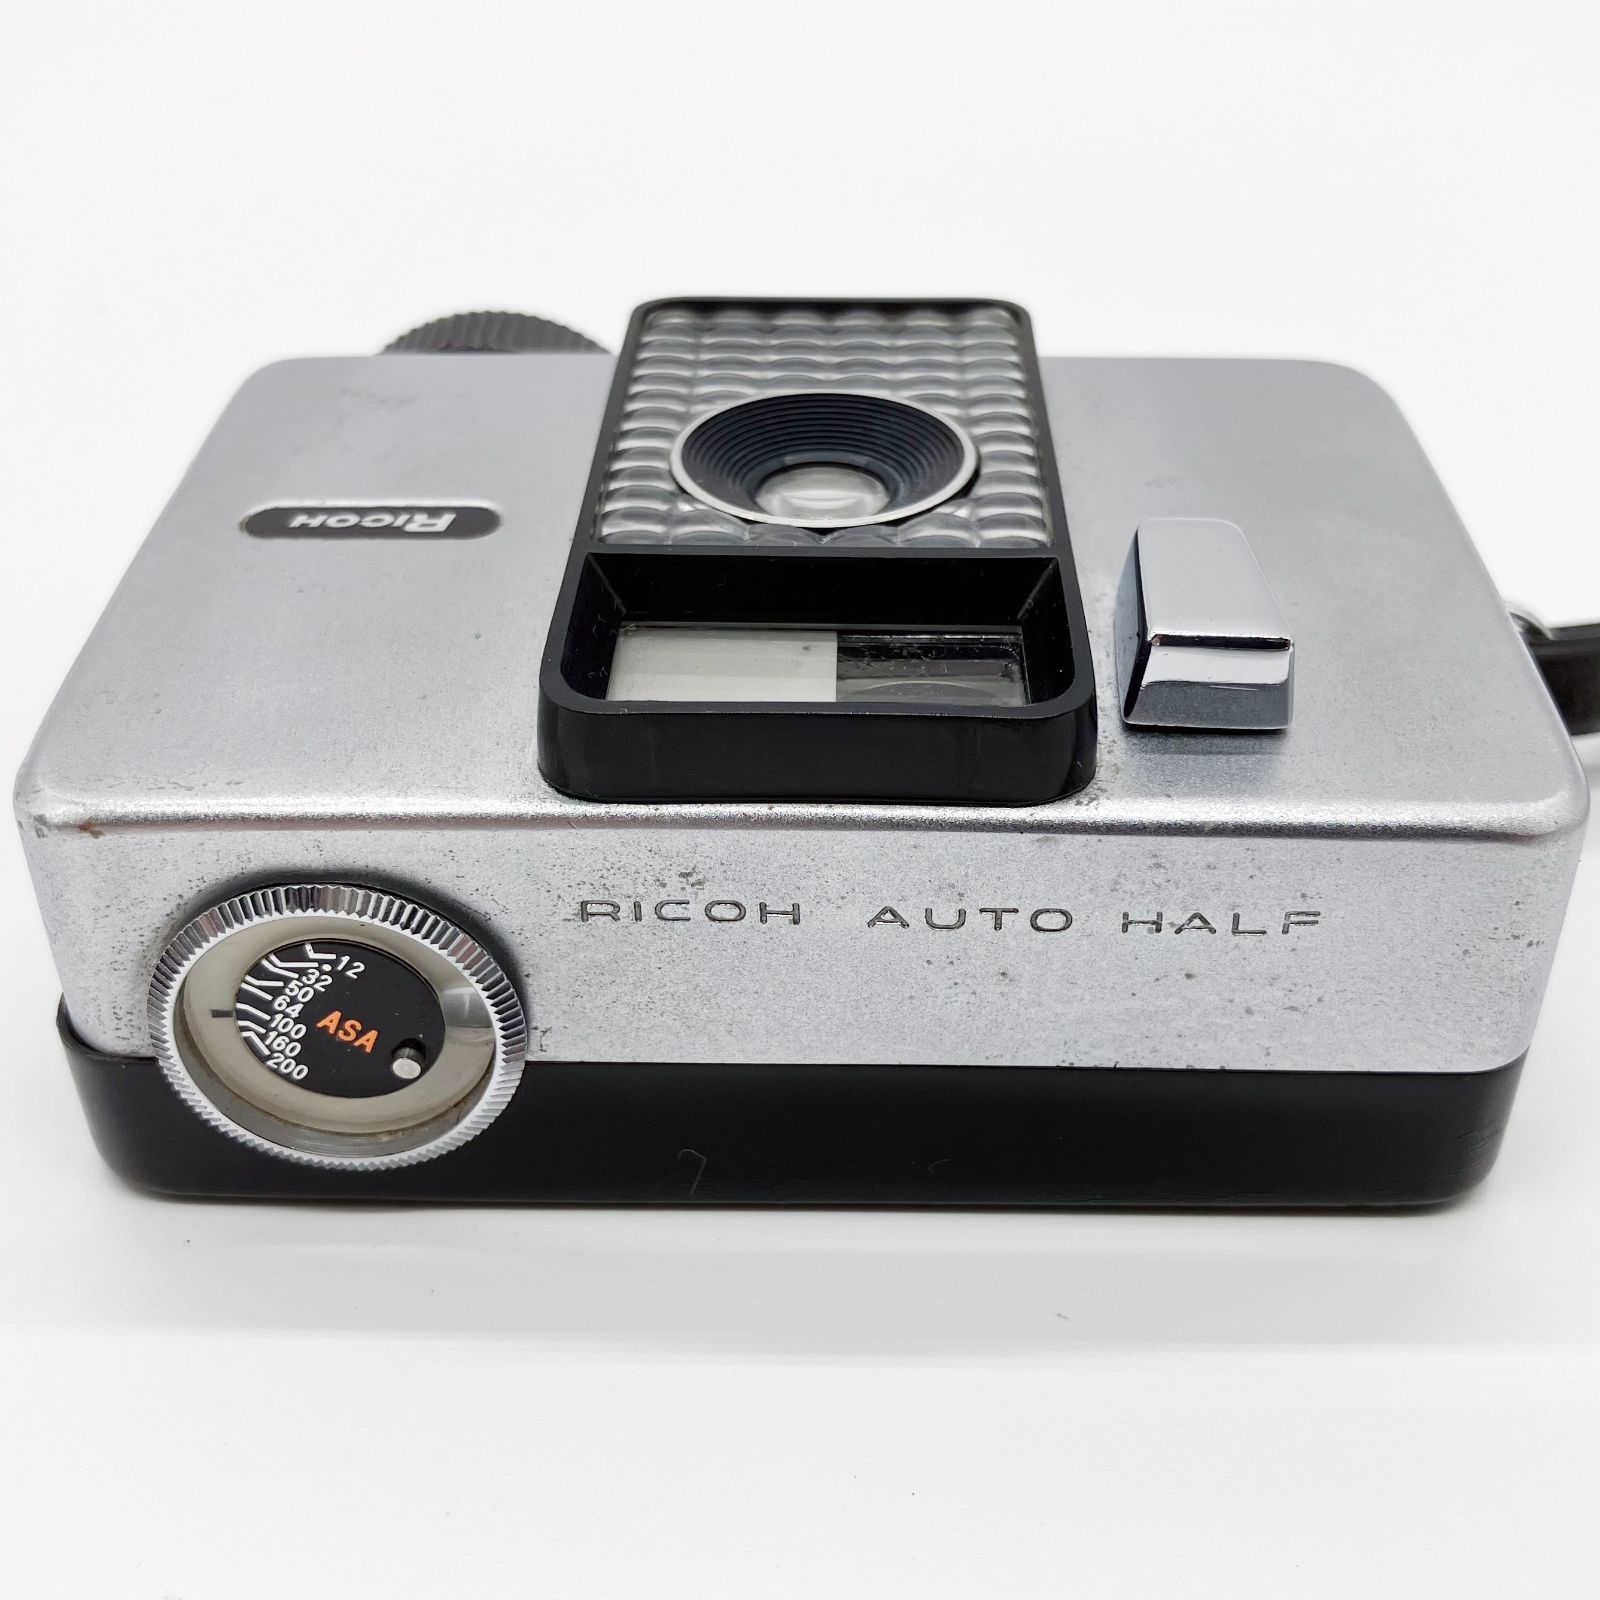 ■RICOH リコー AUTO HALF コンパクトフィルムカメラ F:2.8 28mm